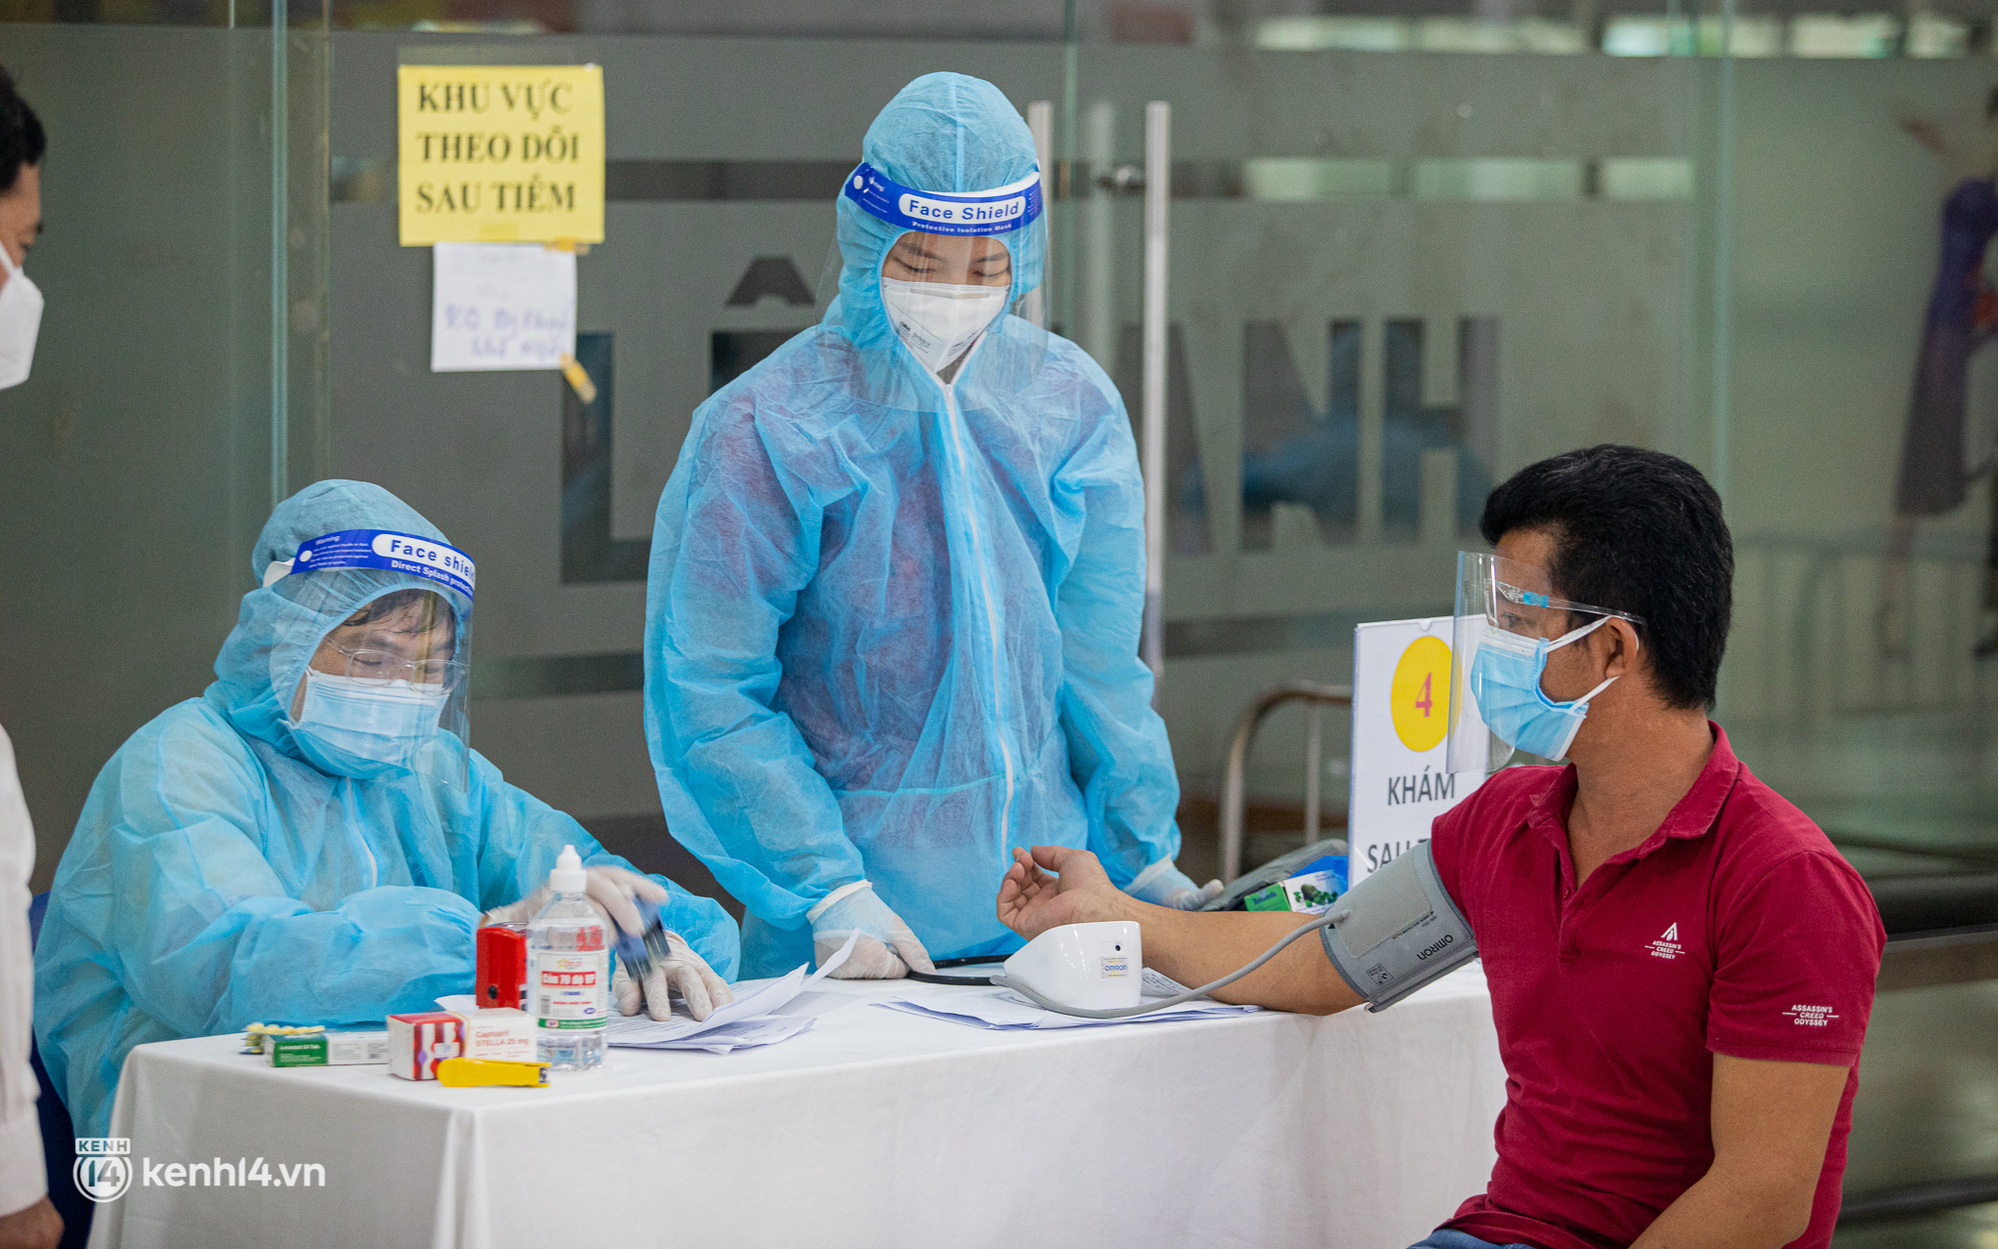 Diễn biến dịch ngày 10/9: Hà Nội, TP.HCM, Bình Dương lên phương án cho người dân đăng ký về quê; TP.HCM lo thiếu vaccine